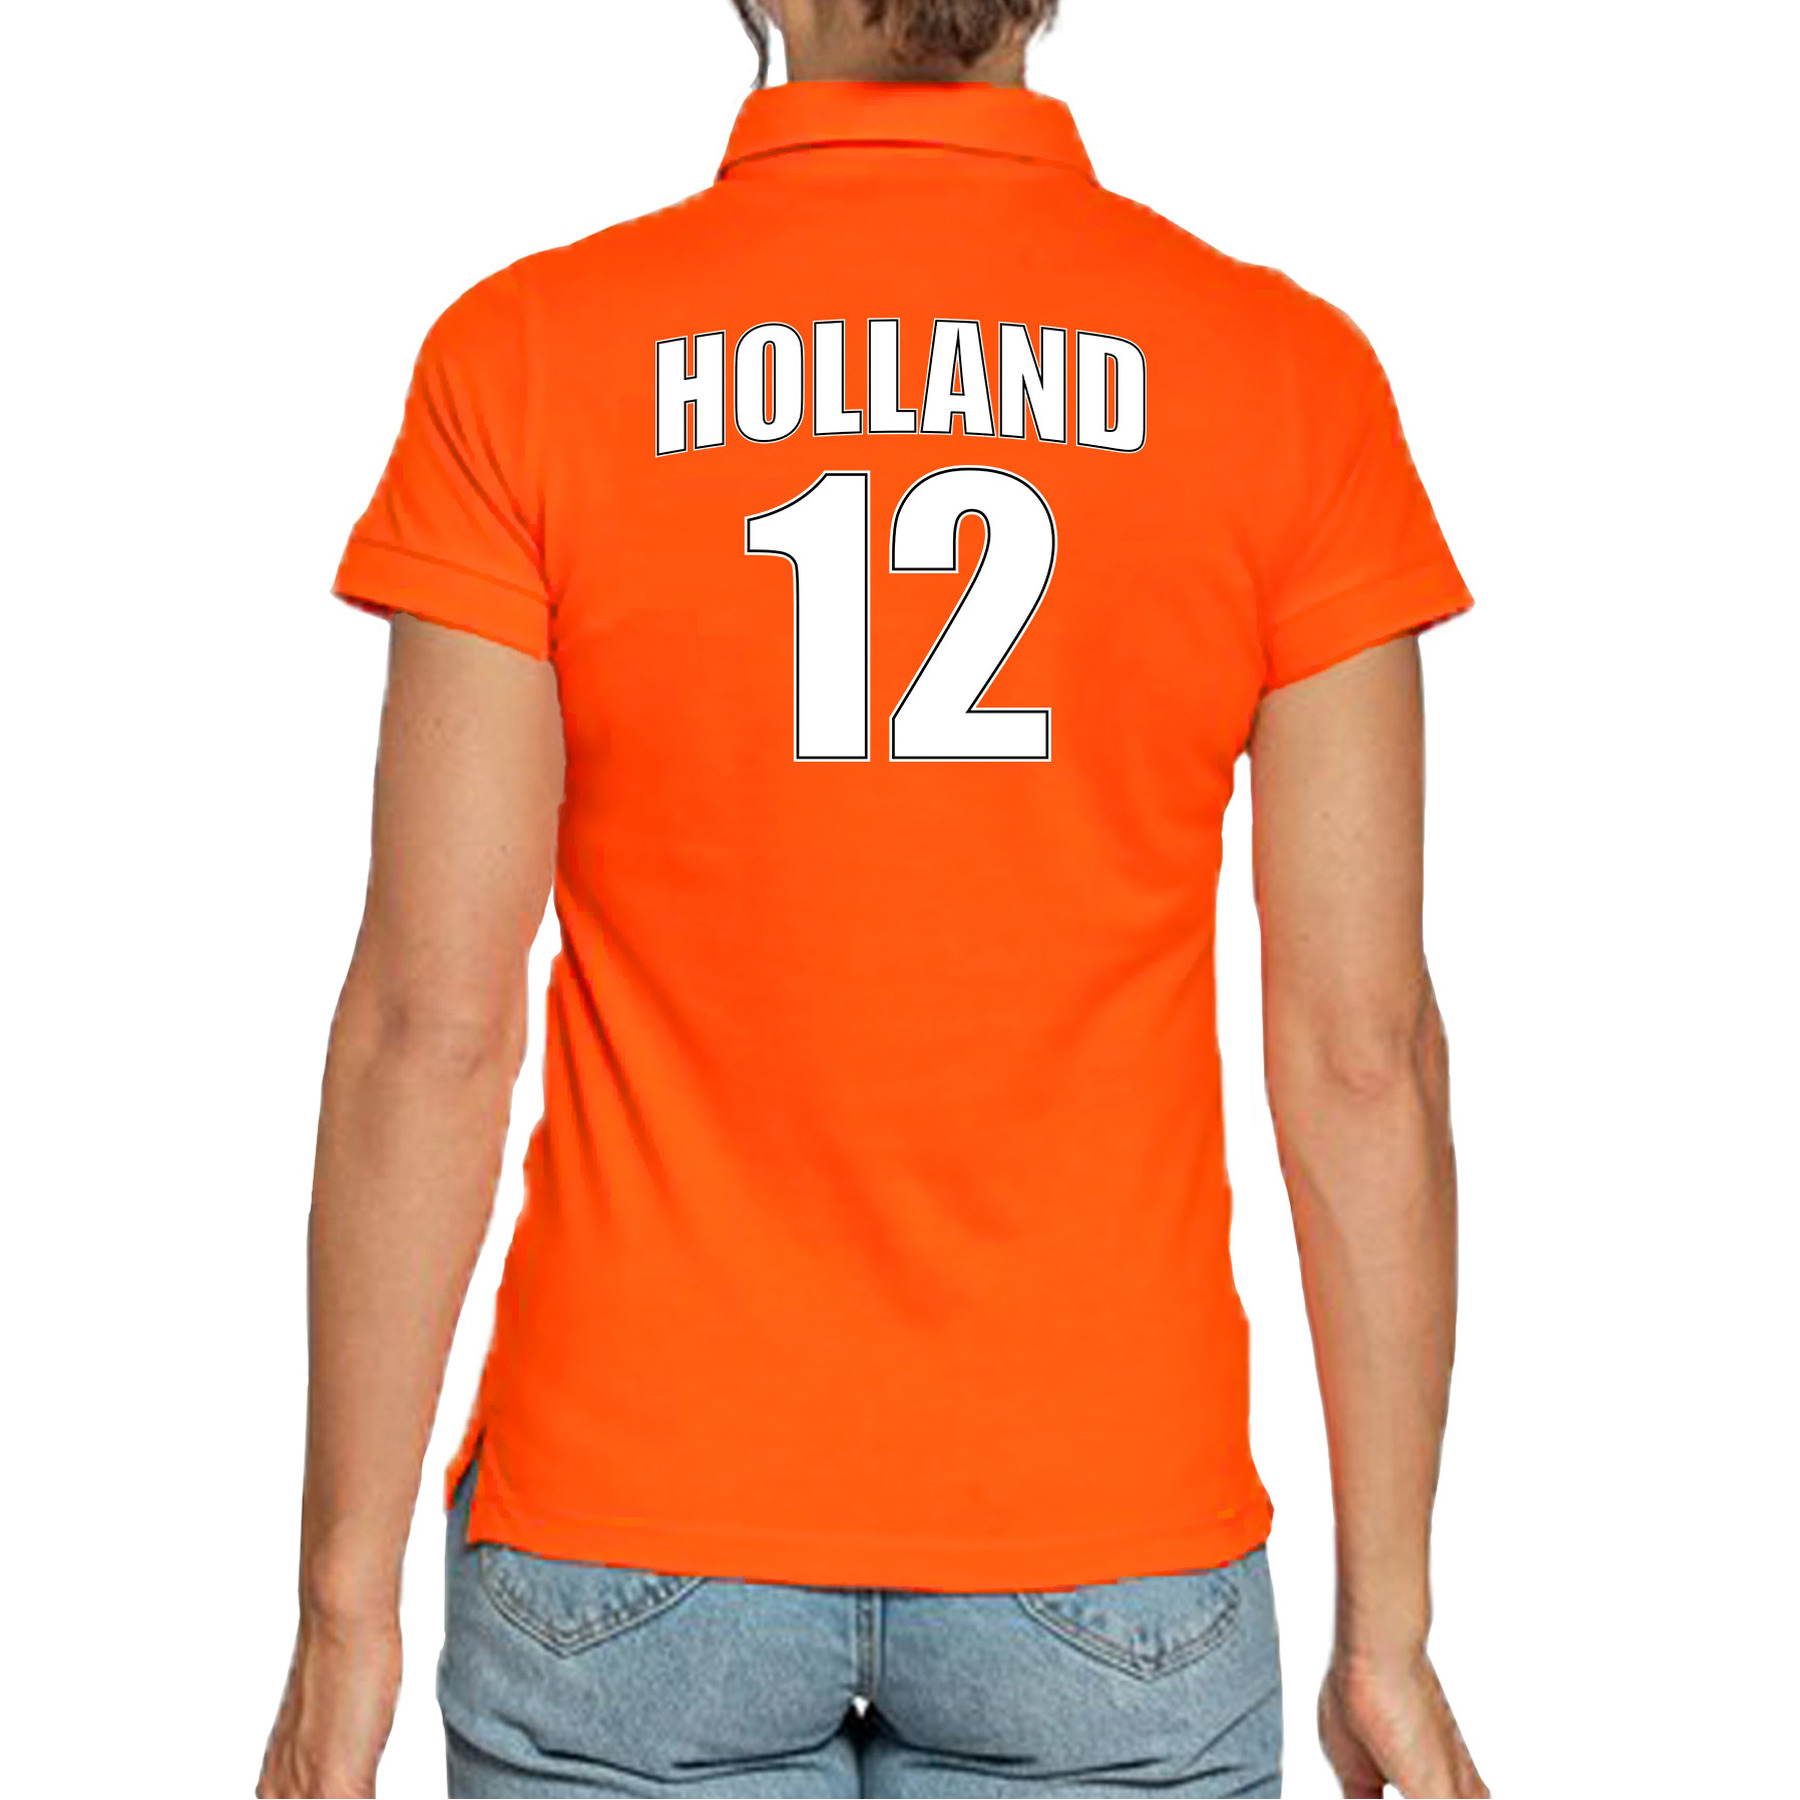 Oranje supporter poloshirt met rugnummer 12 - Holland - Nederland fan shirt voor dames